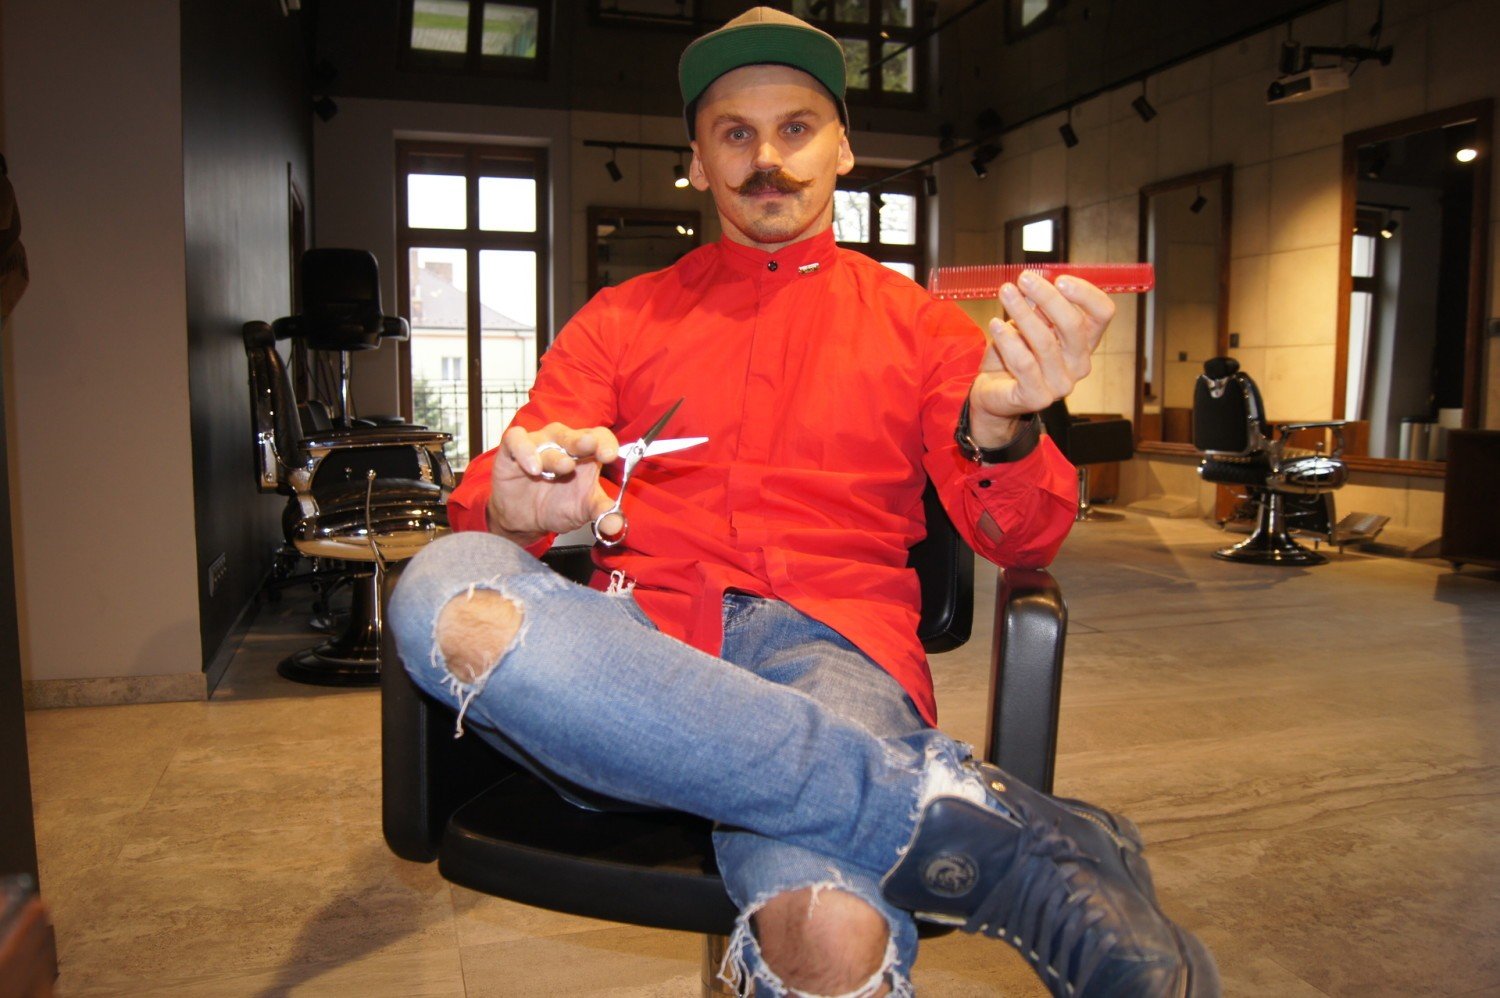 Najlepszy fryzjer w Polsce pochodzi z Tarnowa! Tarnów